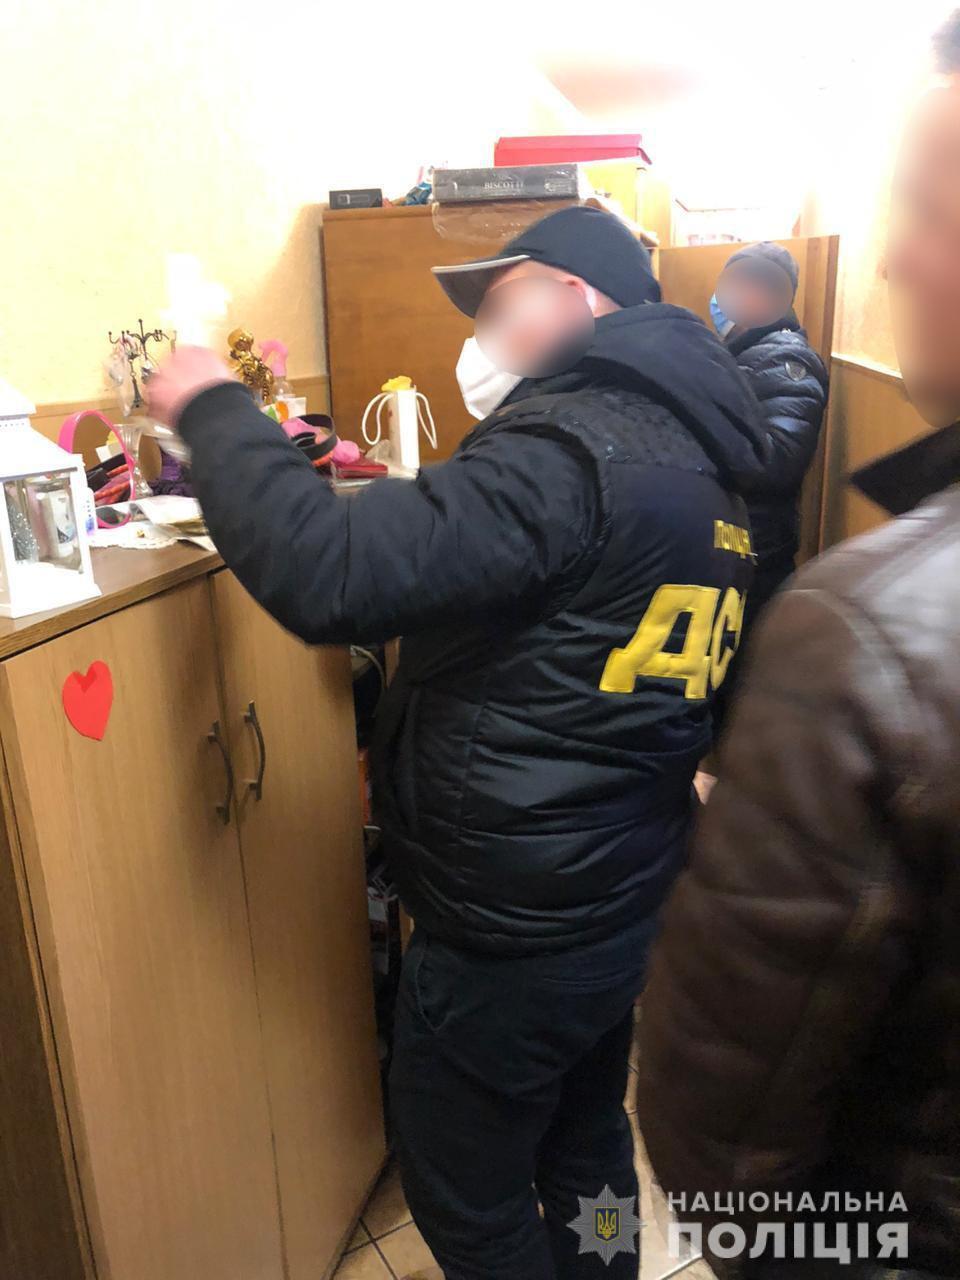 Закарпатські поліцейські повідомили про підозру групі осіб на чолі з головою ОТГ за розкрадання коштів